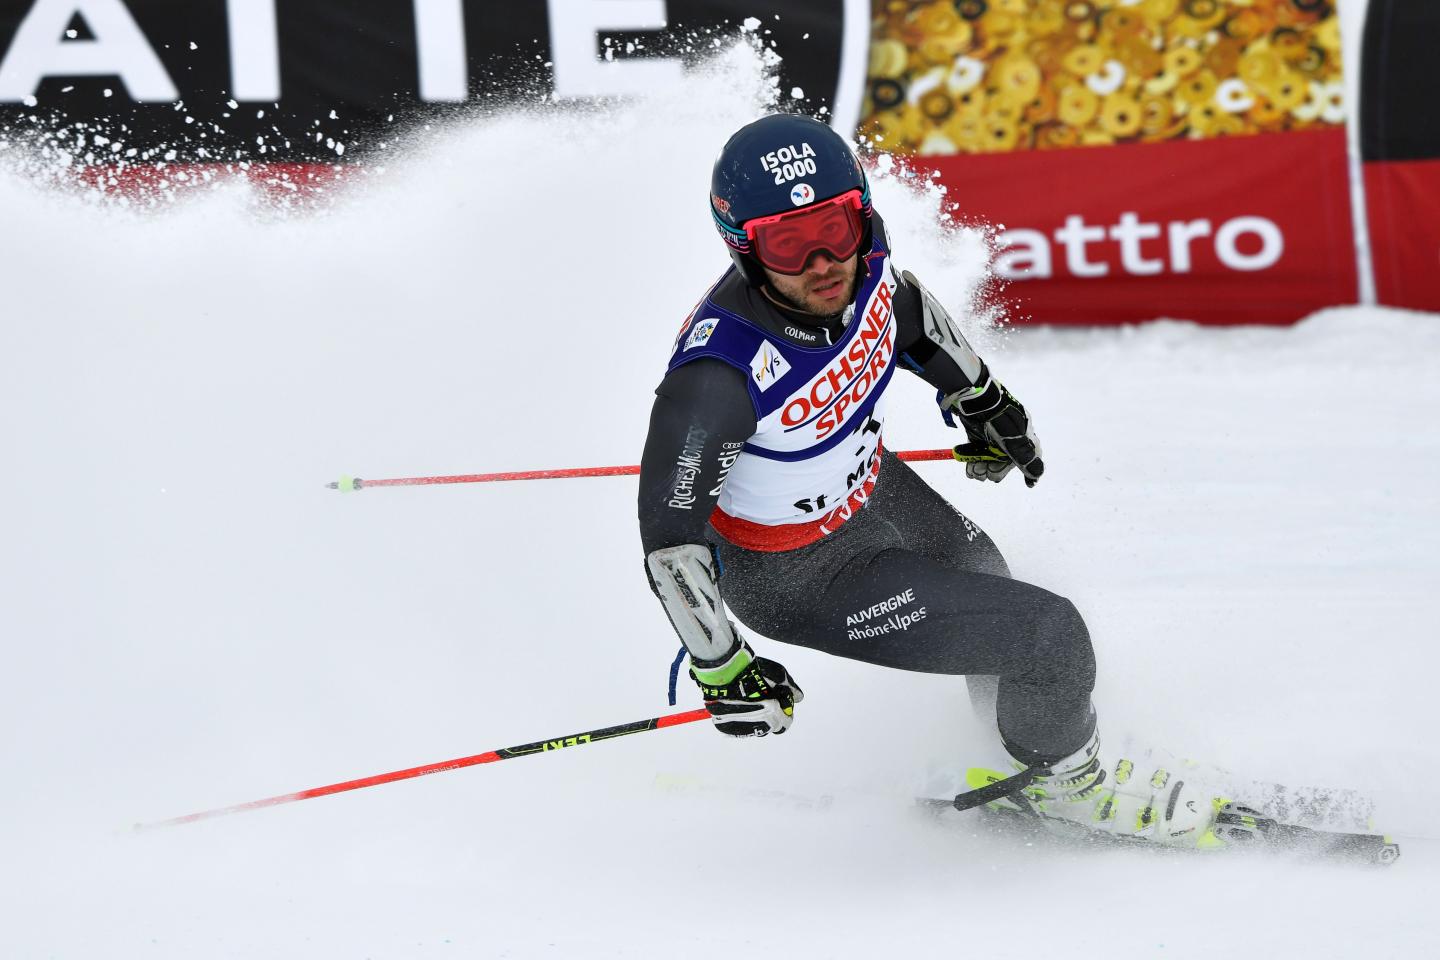 JO 2018: le mea culpa du skieur d'Isola 2000 Mathieu Faivre, renvoyé en France pour raison disciplinaire - Nice-Matin